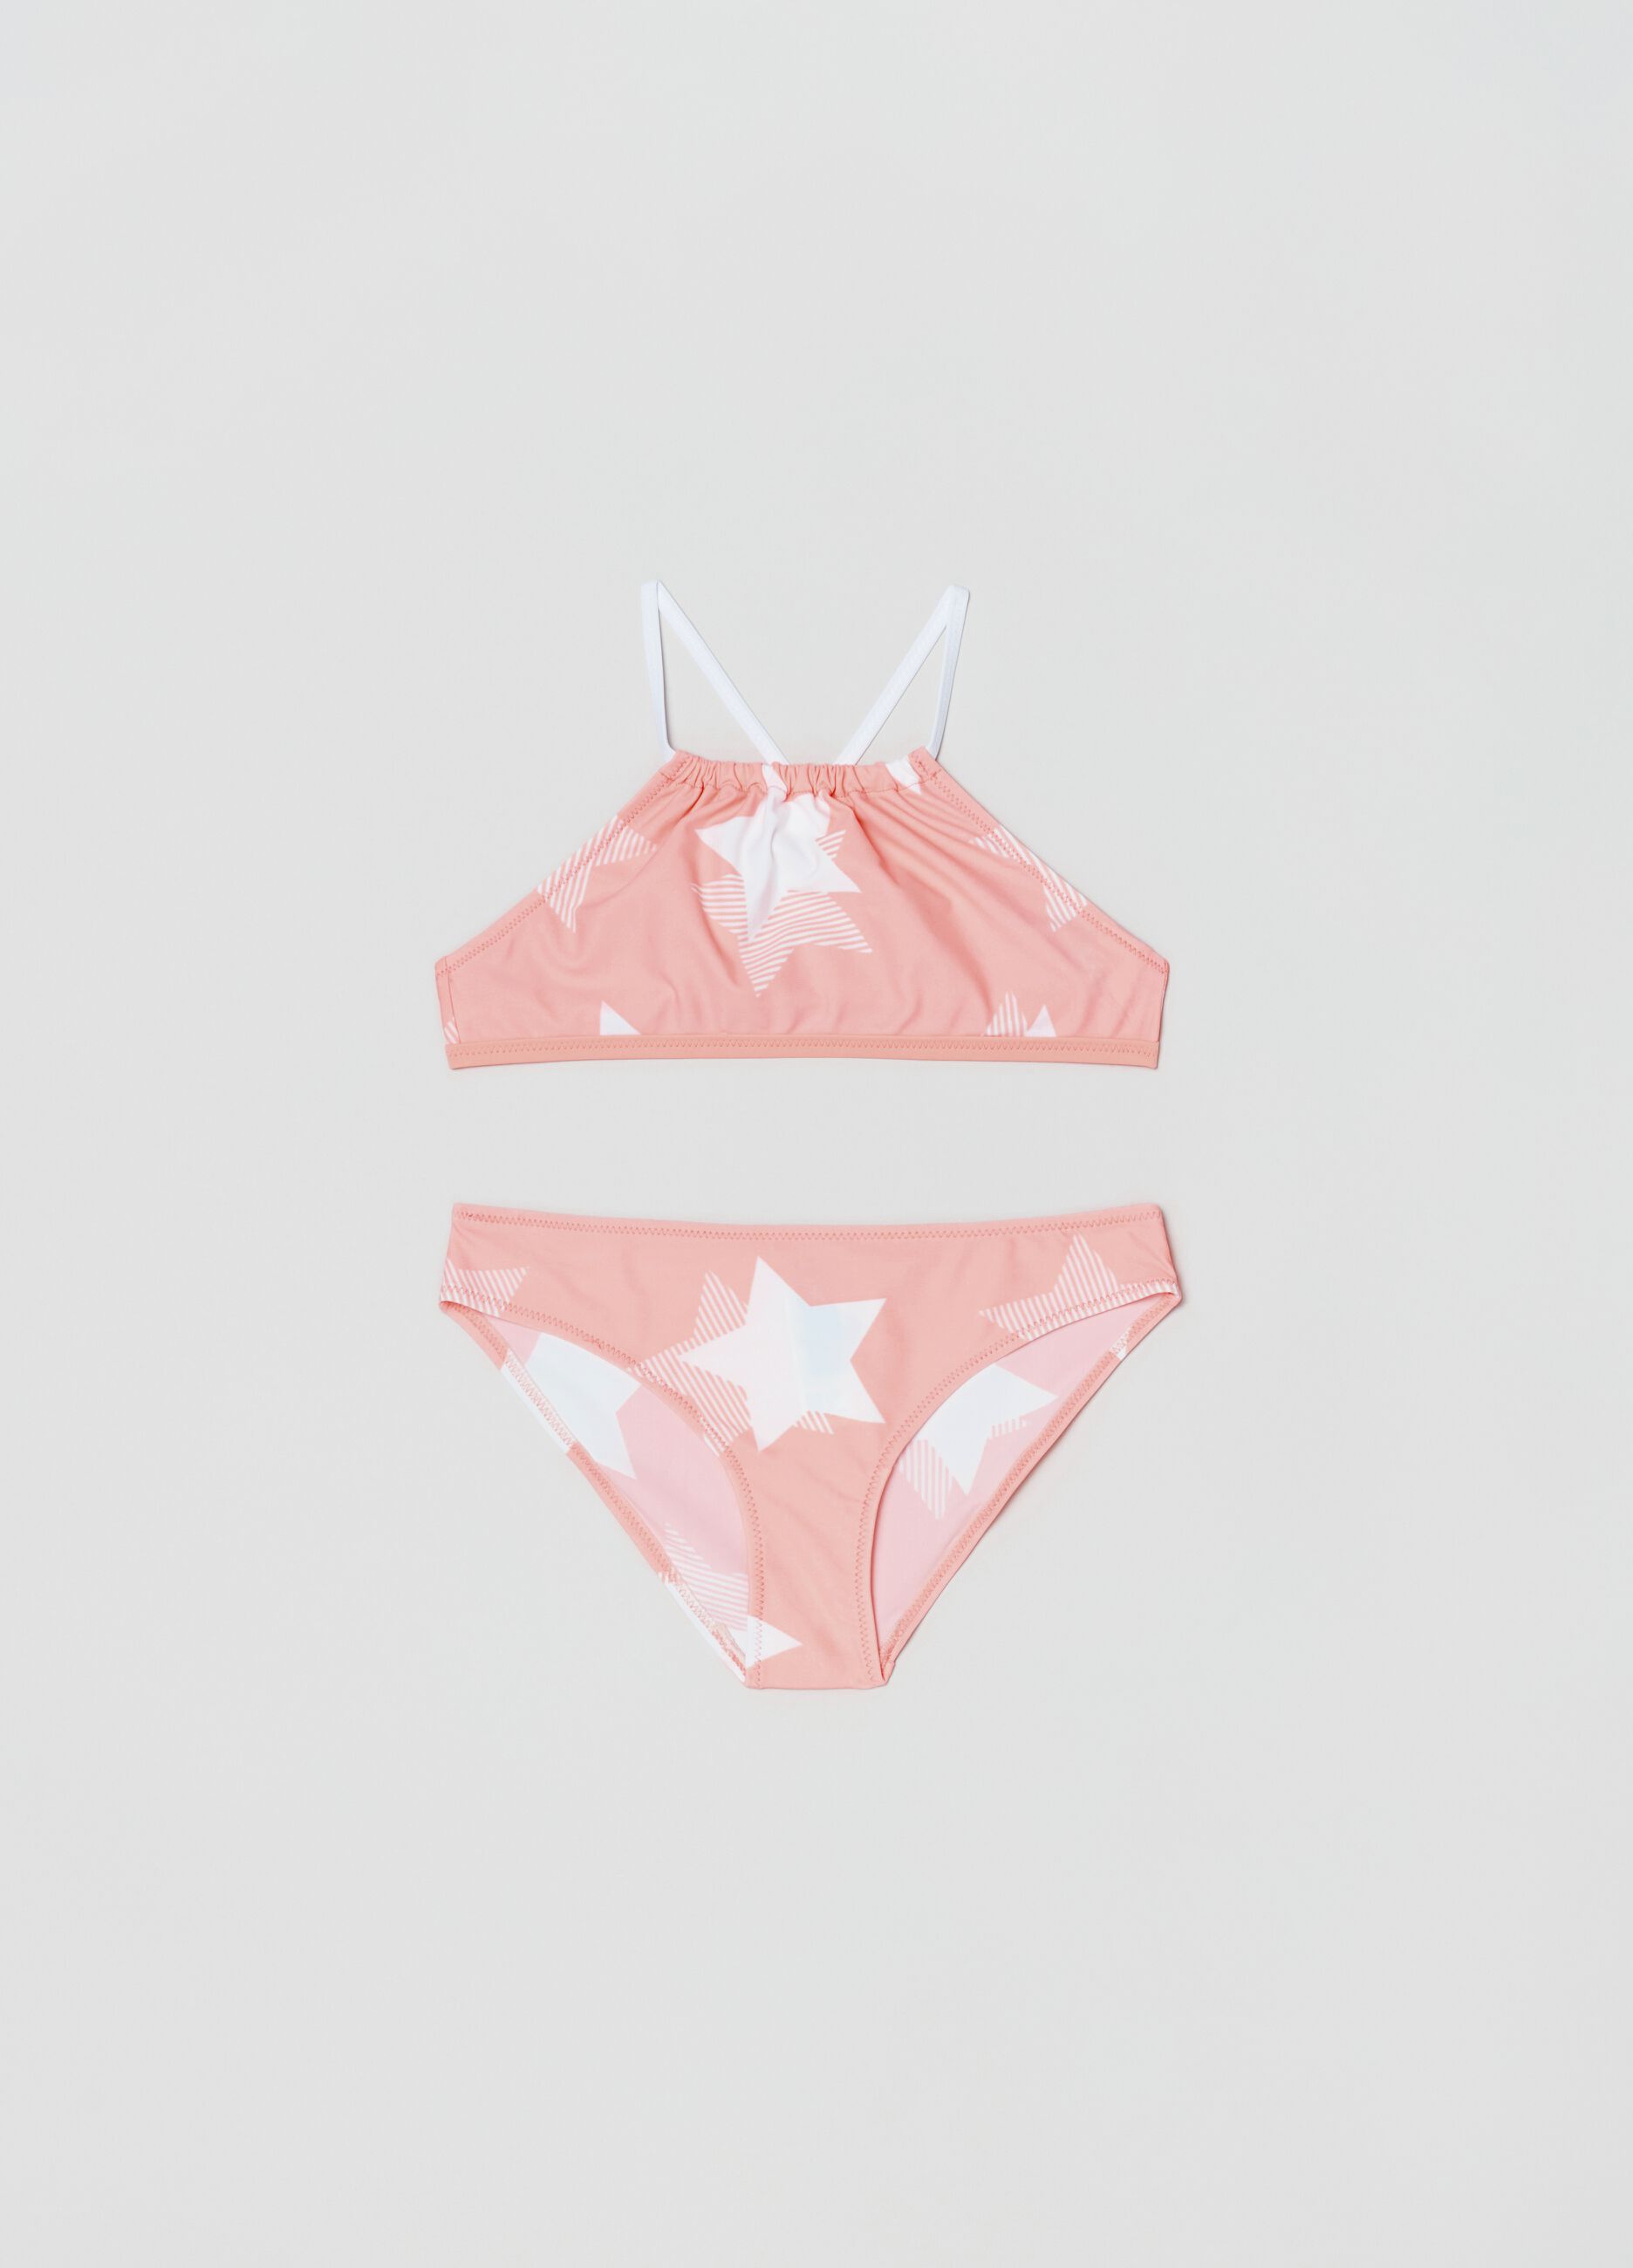 Bikini with stars print